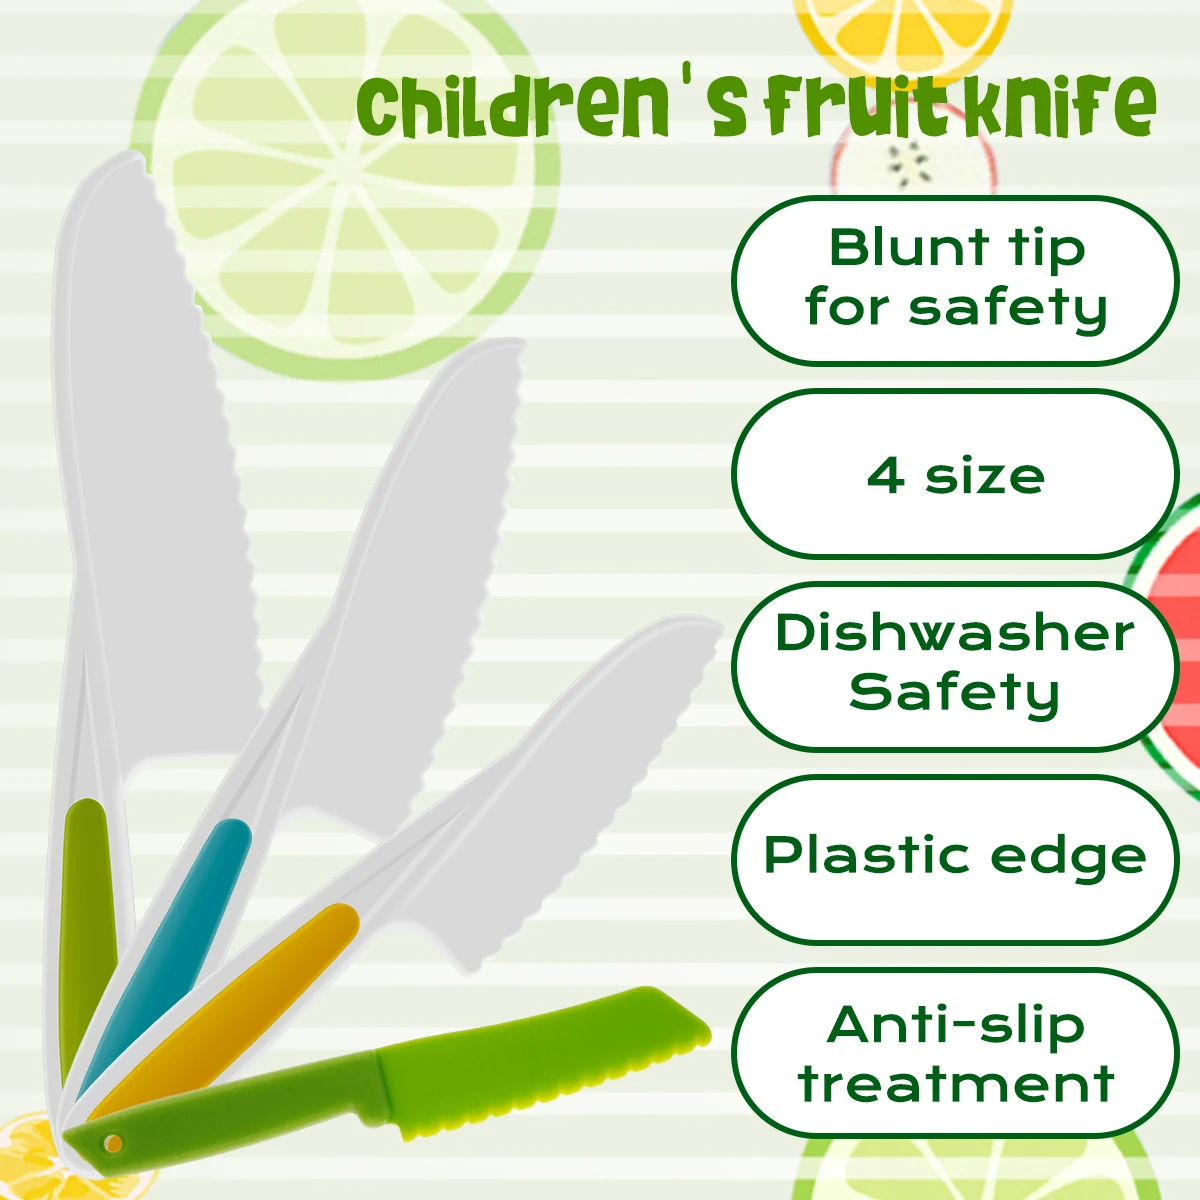 https://ae01.alicdn.com/kf/S5f15b455687843bcaef3a221b331d3e9A/New-Kids-Cooking-Cutter-Set-Plastic-Children-Fruit-Knife-Safe-Toddler-Toy-to-Cut-Fruits-Crinkle.jpg